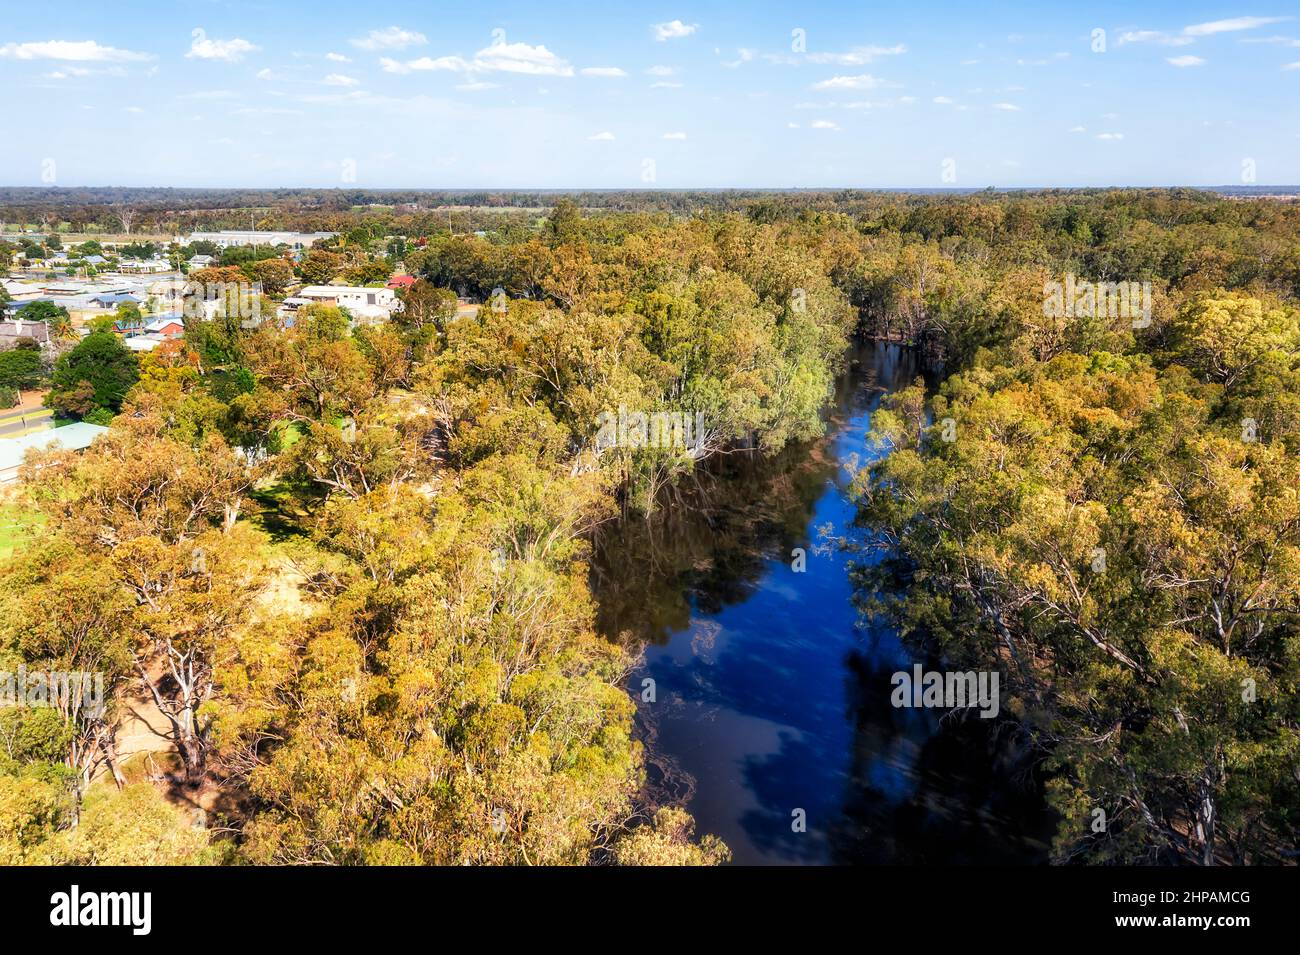 Gumtrees am Ufer des Murrumbidgee Flusses um die Stadt Balranald im australischen Outback. Stockfoto